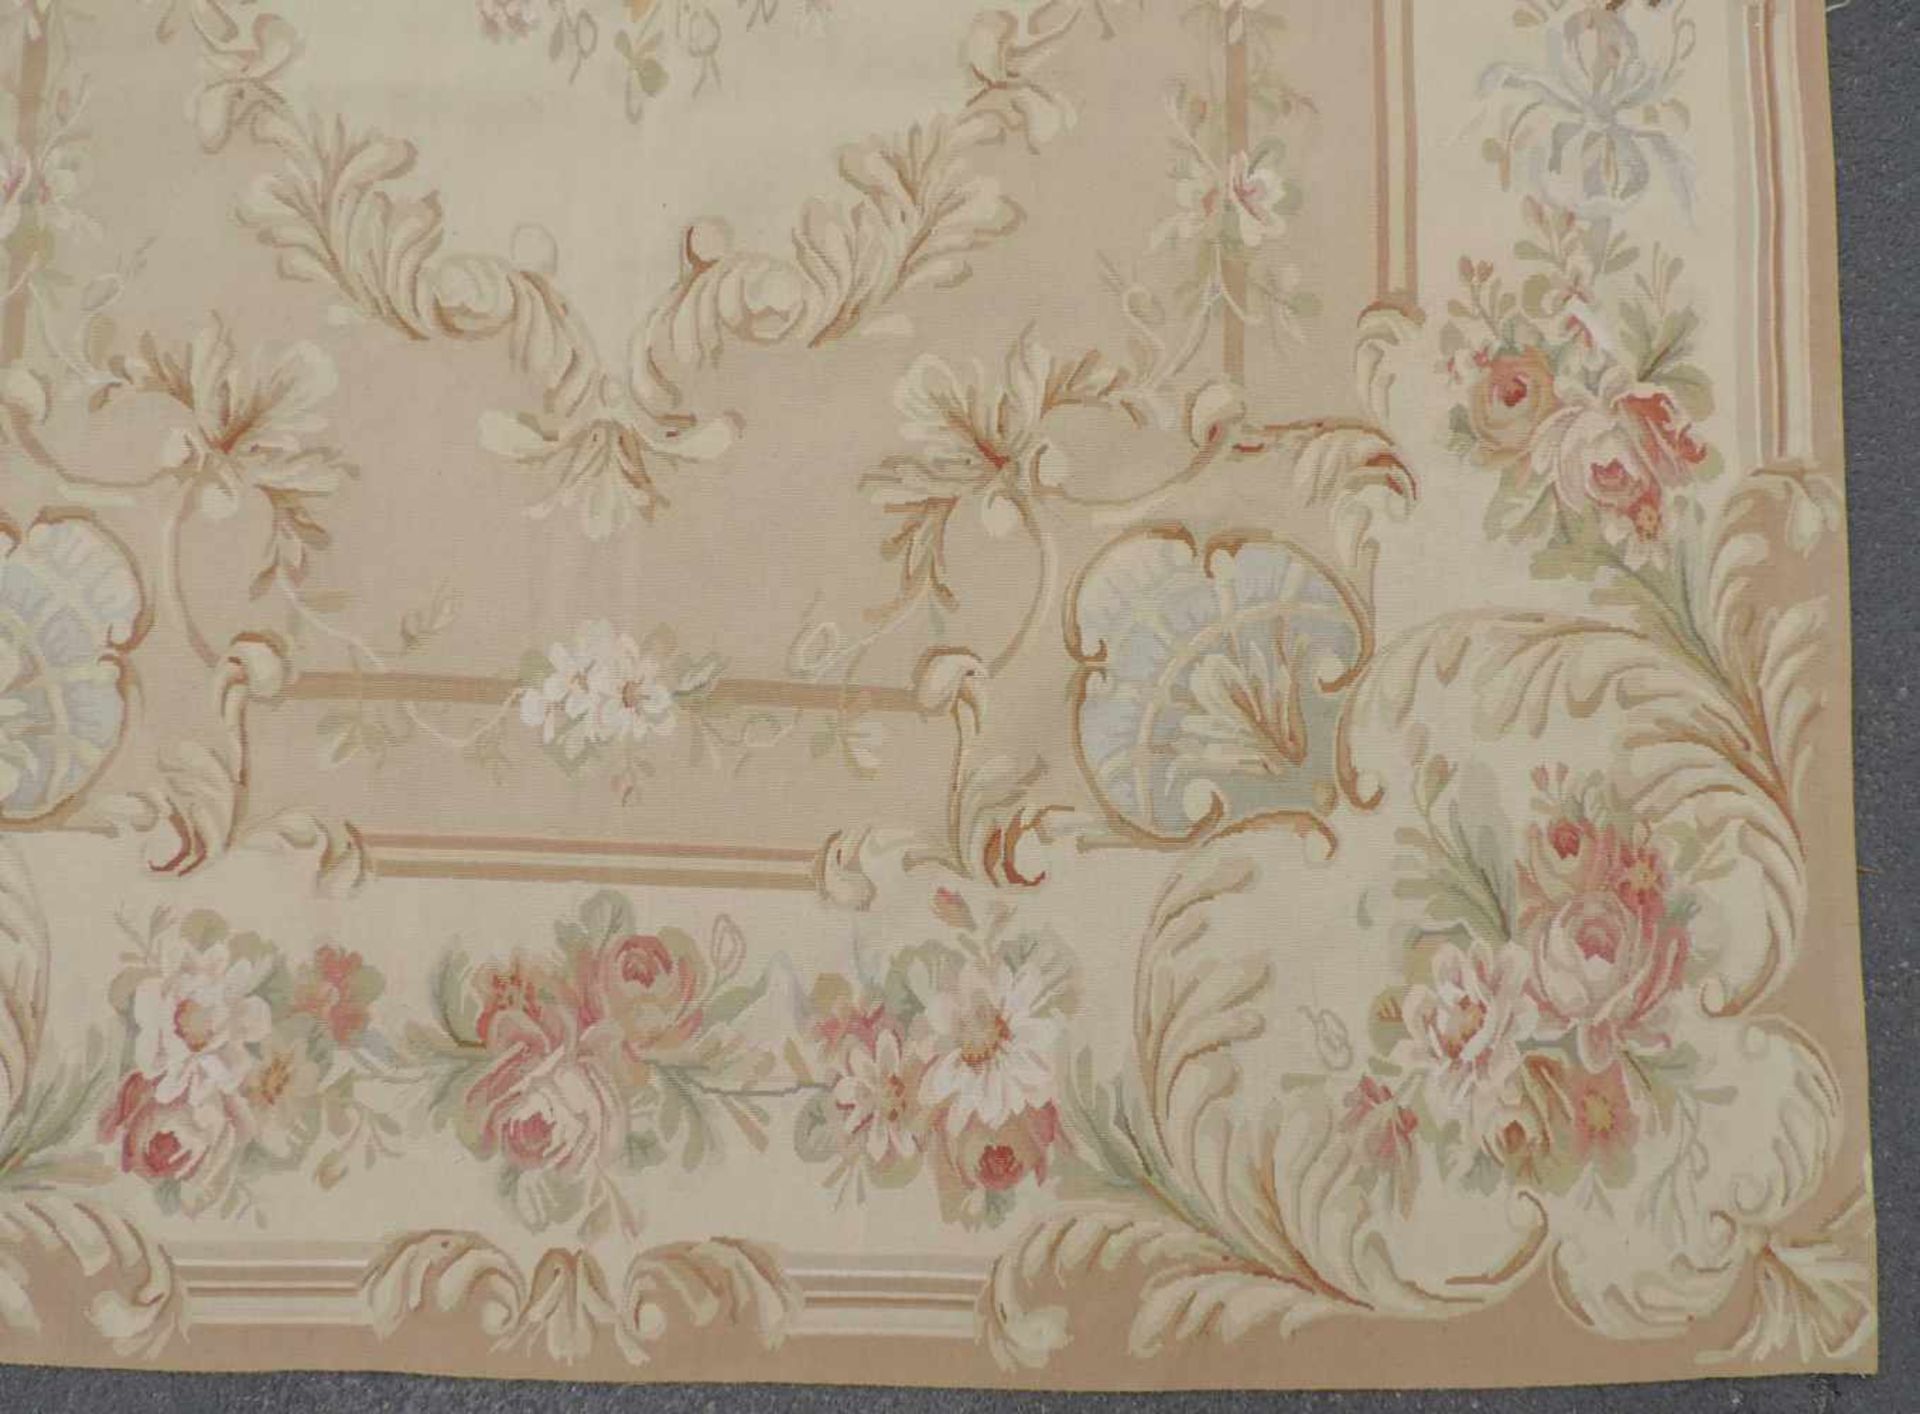 Tapis de Pied "Aubusson". Salonteppich.275 cm x 188 cm. Handgewebt. Wolle auf Wolle.Tapis de Pied " - Image 5 of 10